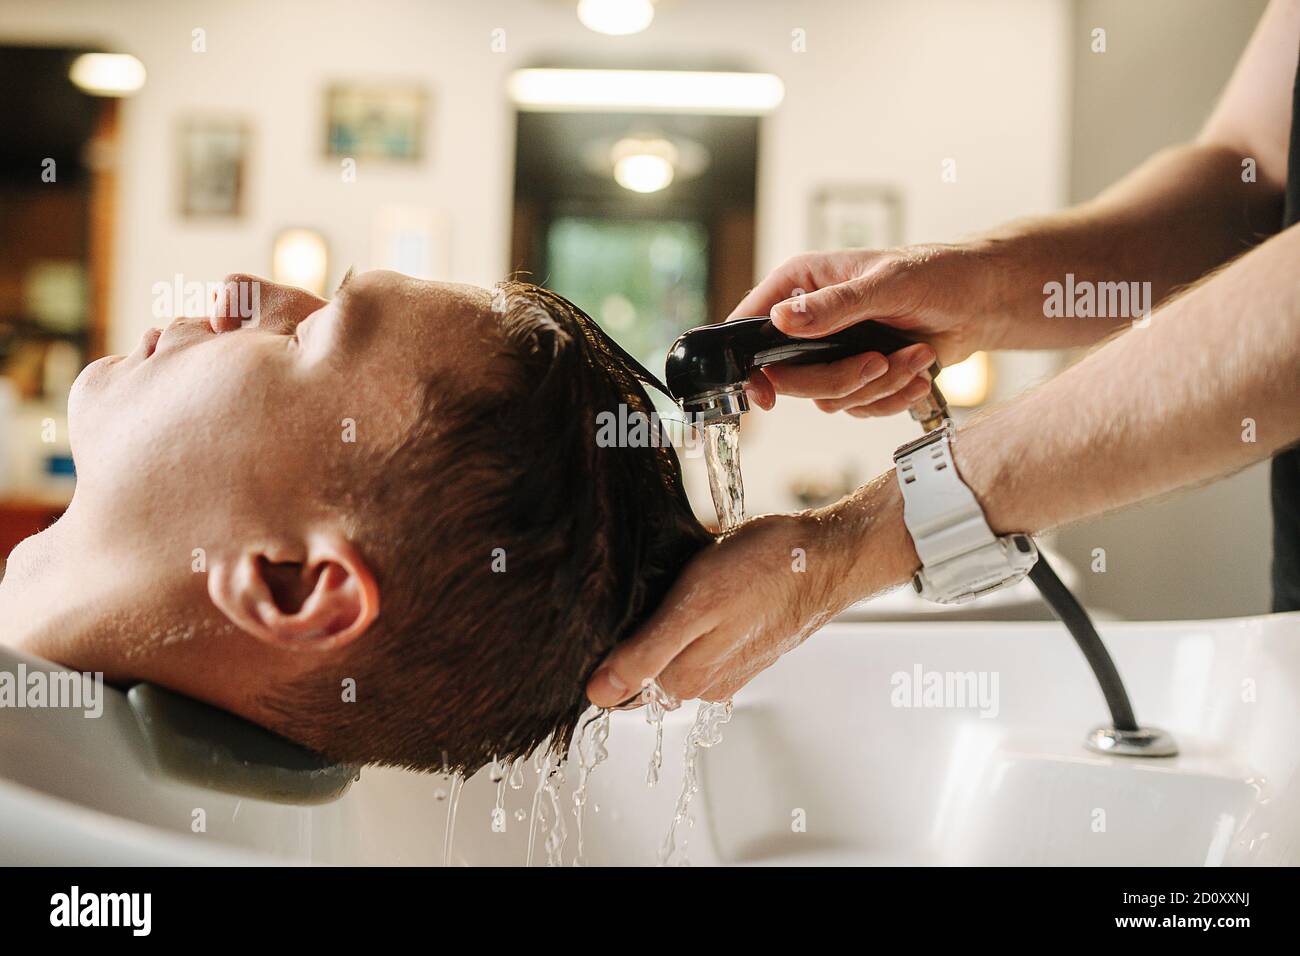 Friseur Hände waschen Client Kopf in einem spezialisierten Waschbecken in Ein Friseurladen Stockfoto